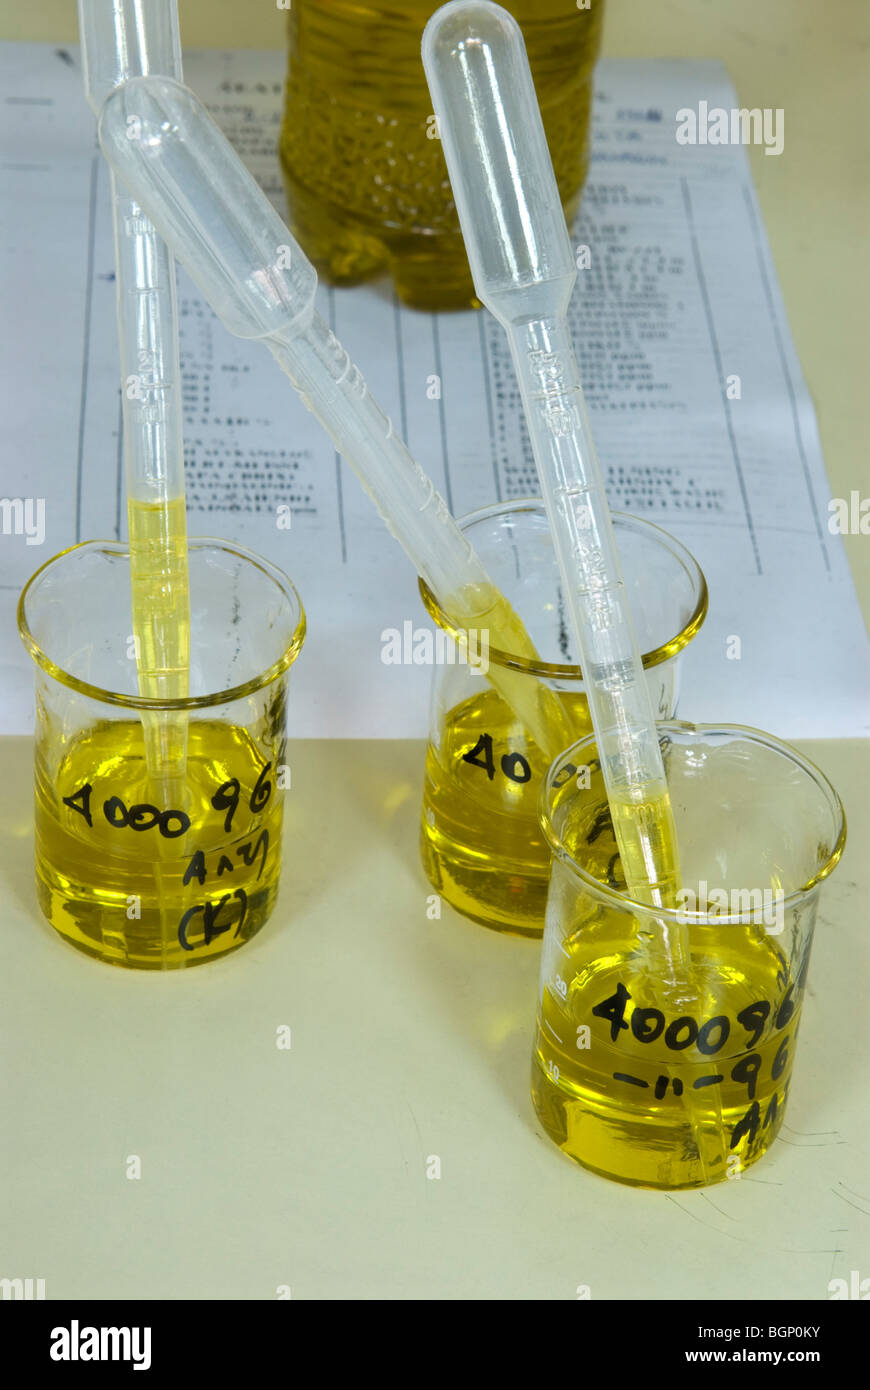 Formulario de calidad del aceite de oliva y contenedores con muestras Foto de stock